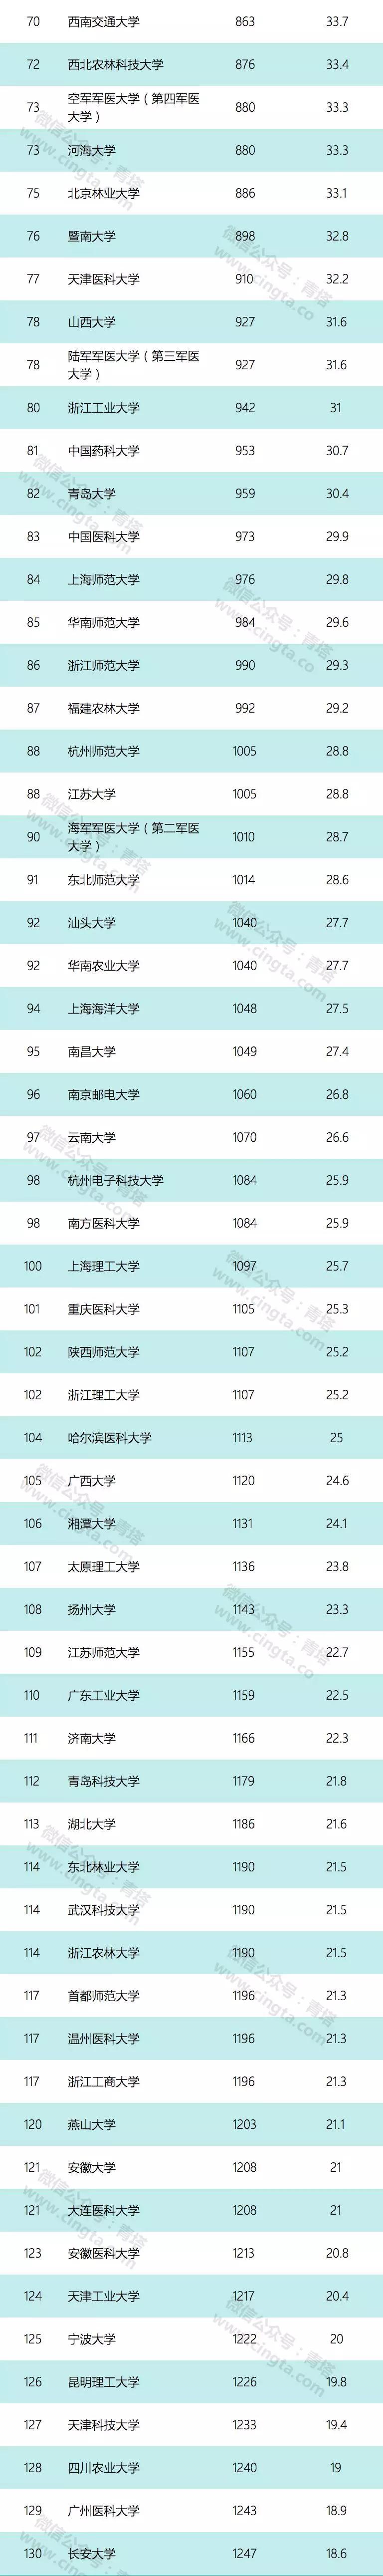 USNews 2019世界大学排行榜出炉 161所中国高线入围2